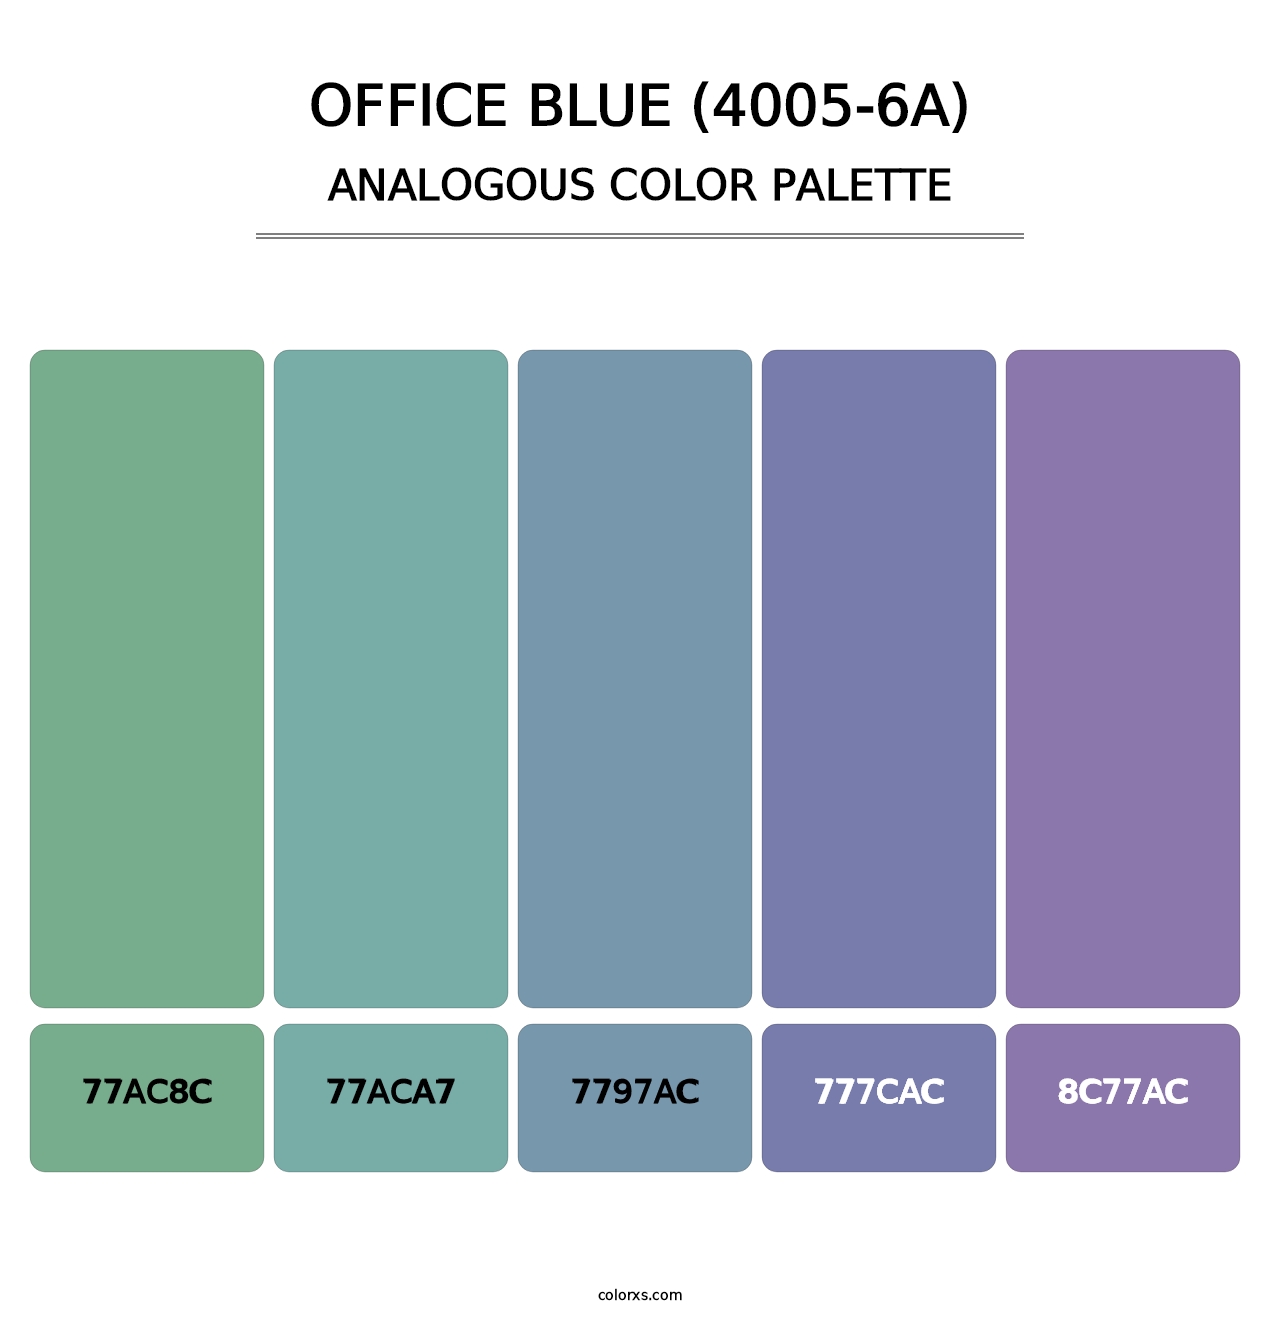 Office Blue (4005-6A) - Analogous Color Palette